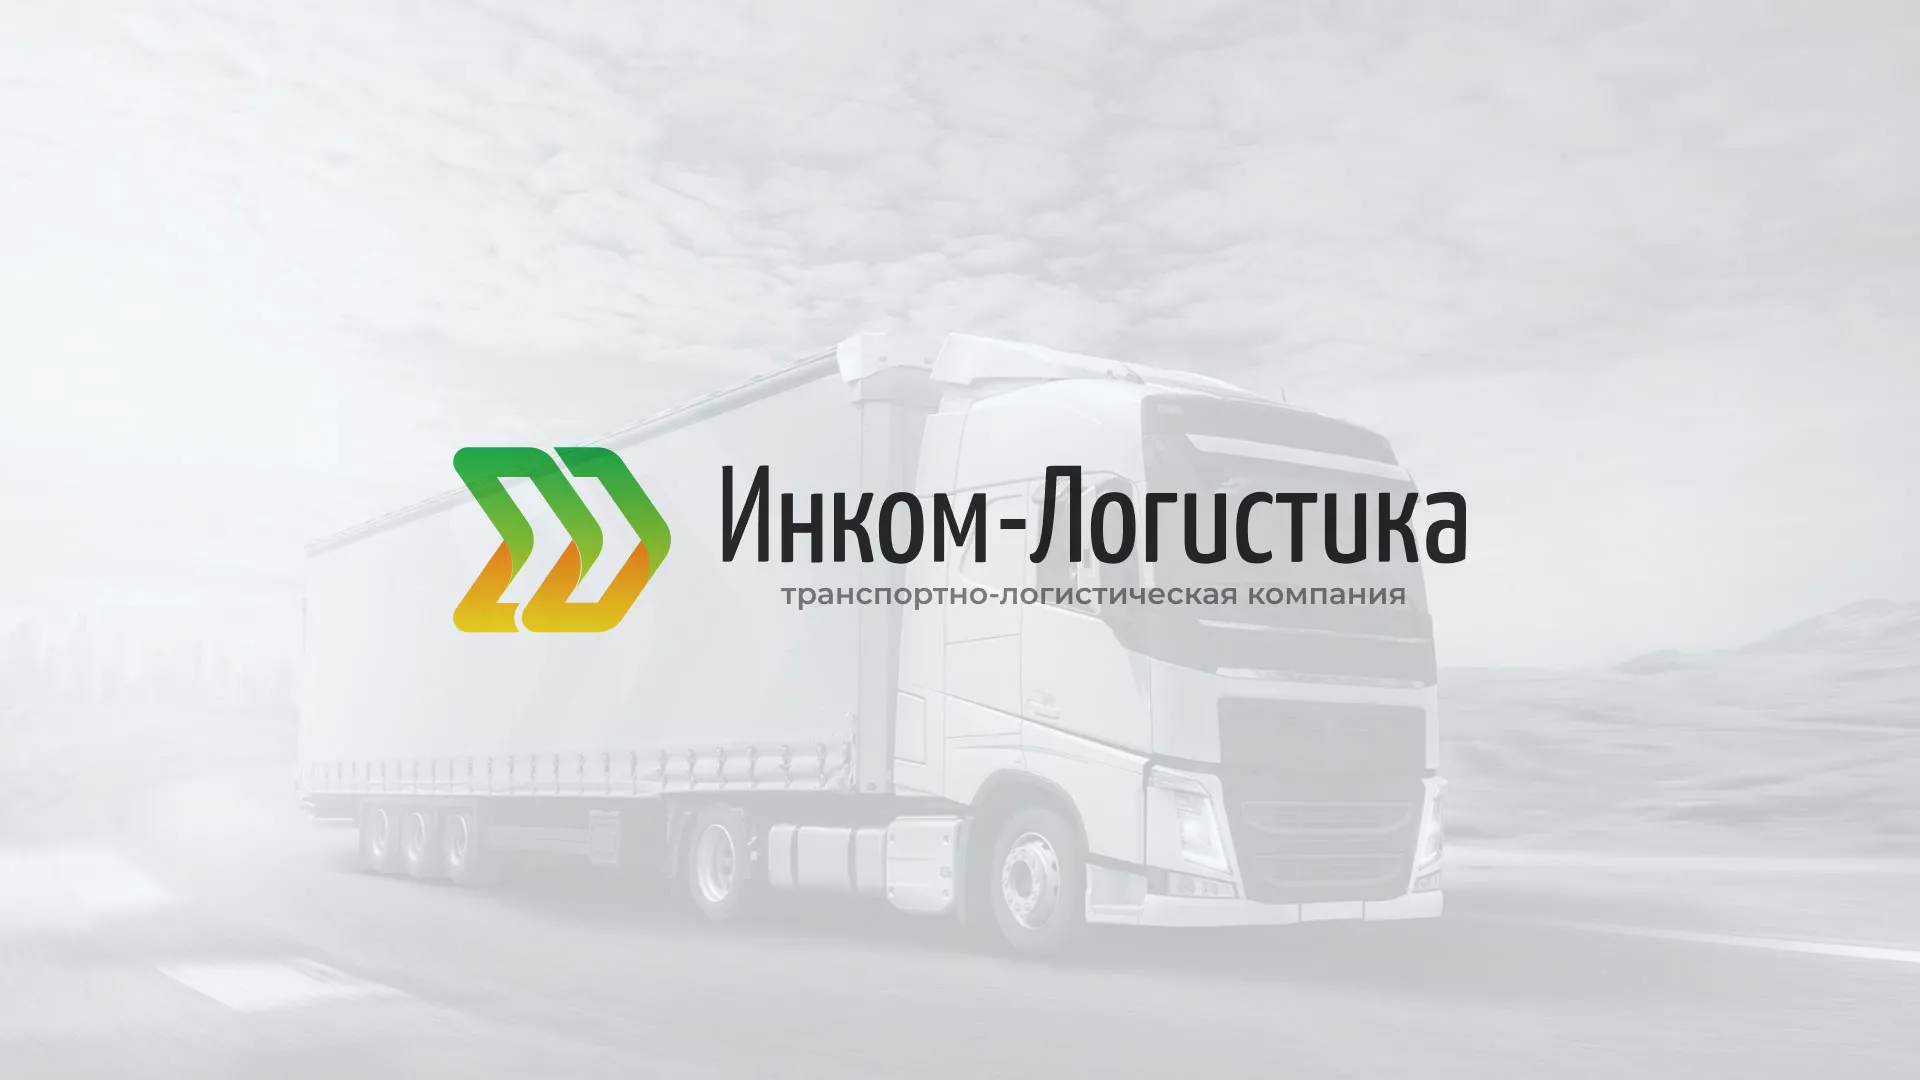 Разработка логотипа и сайта компании «Инком-Логистика» в Альметьевске